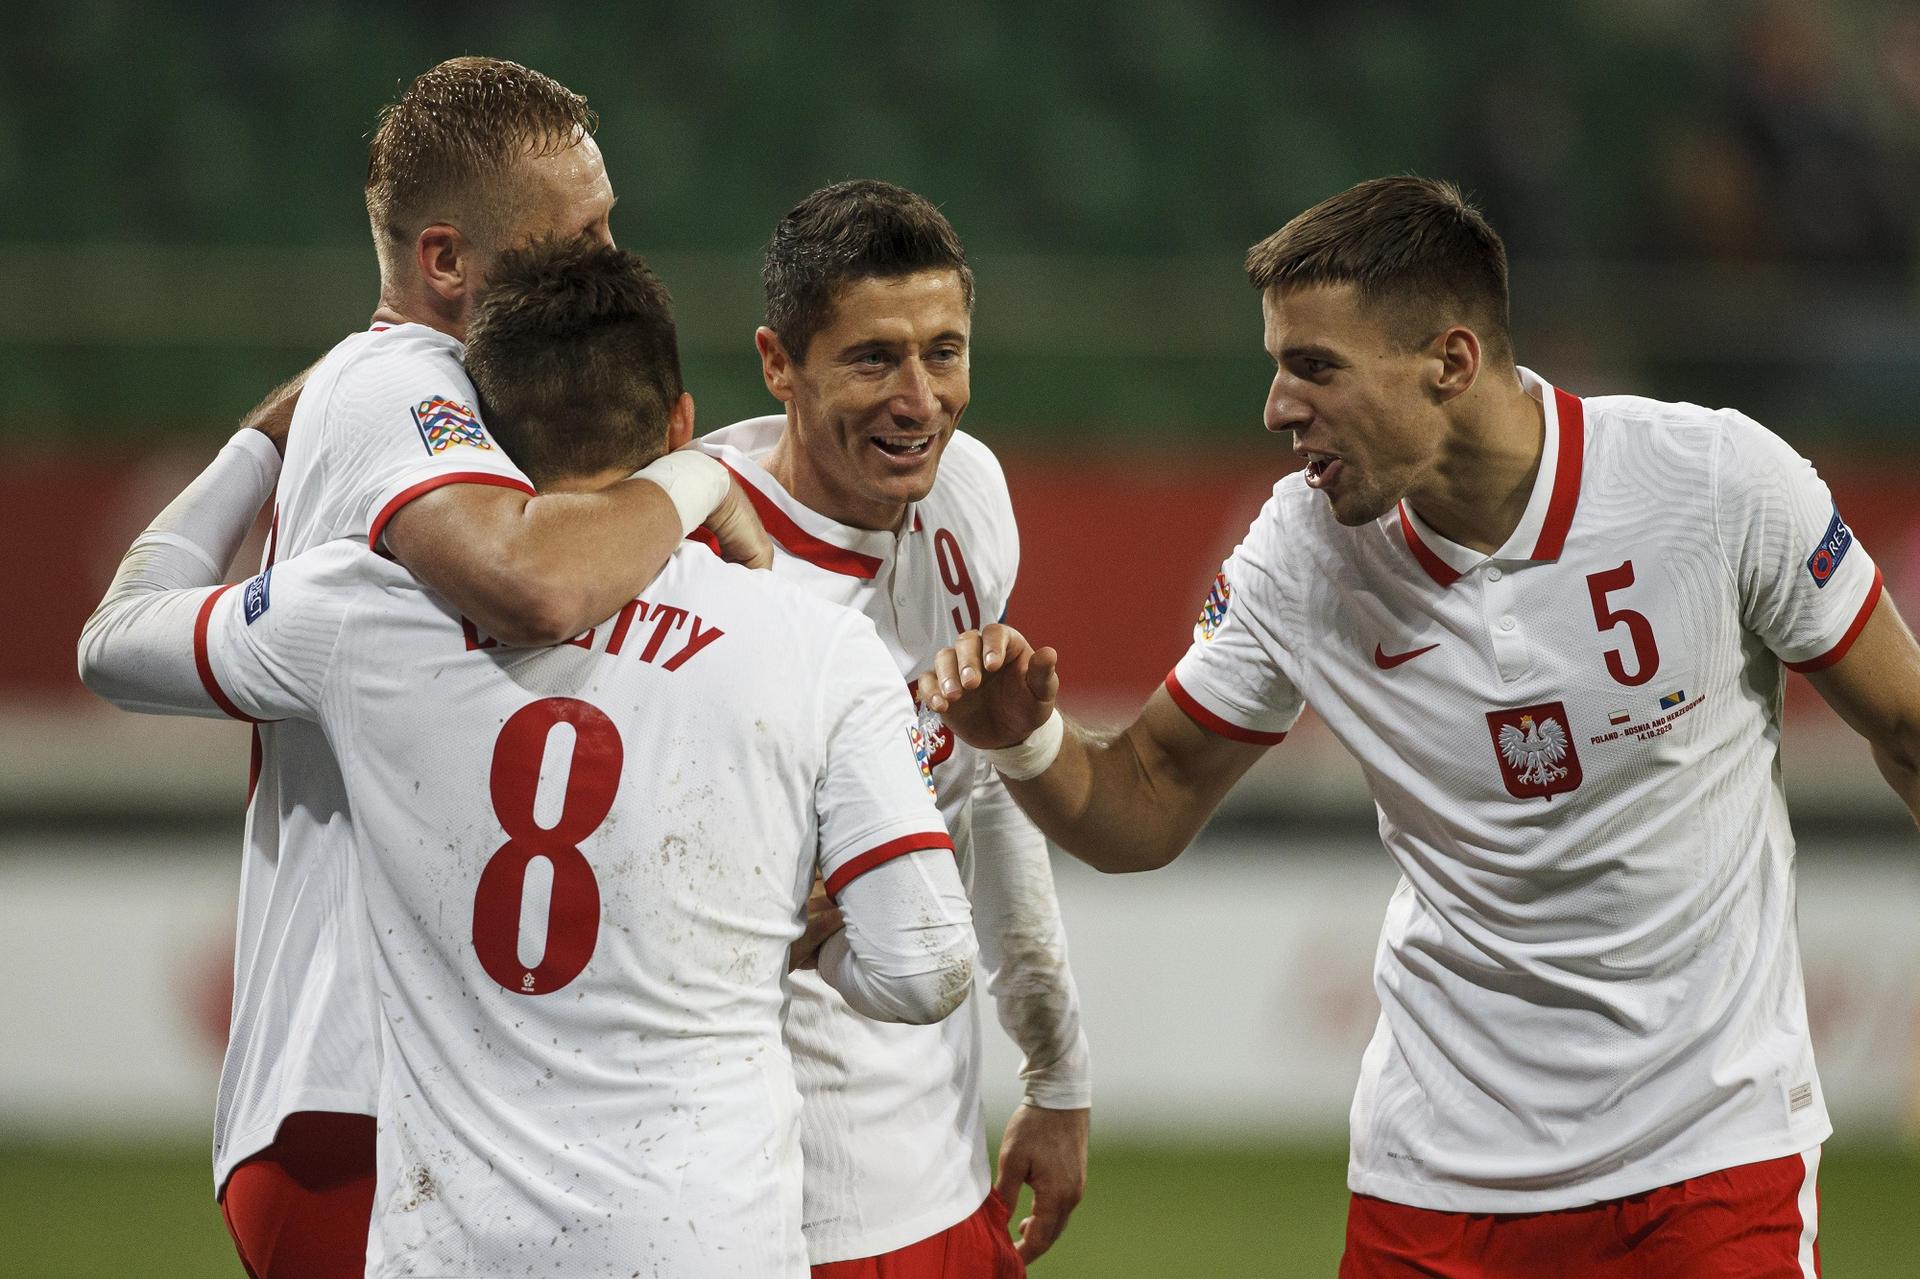 Mecz Polska Slowacja Na Euro 2021 Kiedy Jest Gdzie O Ktorej Godzinie Eska Pl